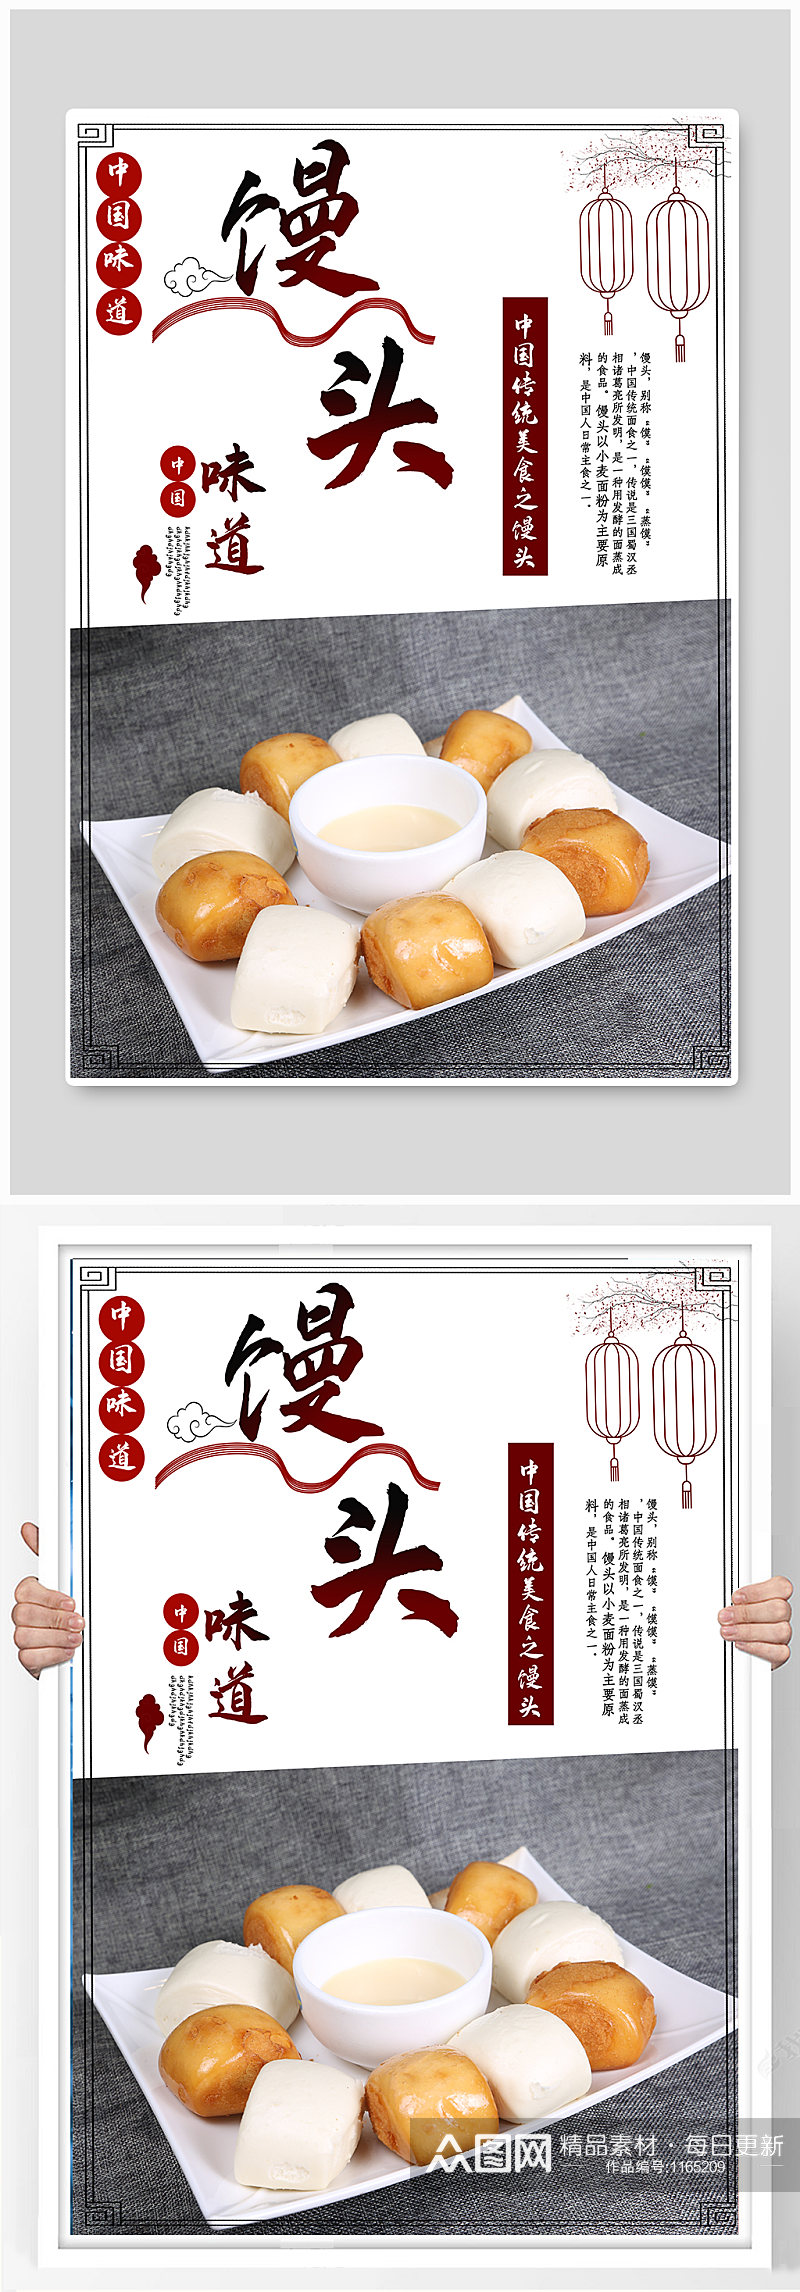 中国传统美食馒头海报素材